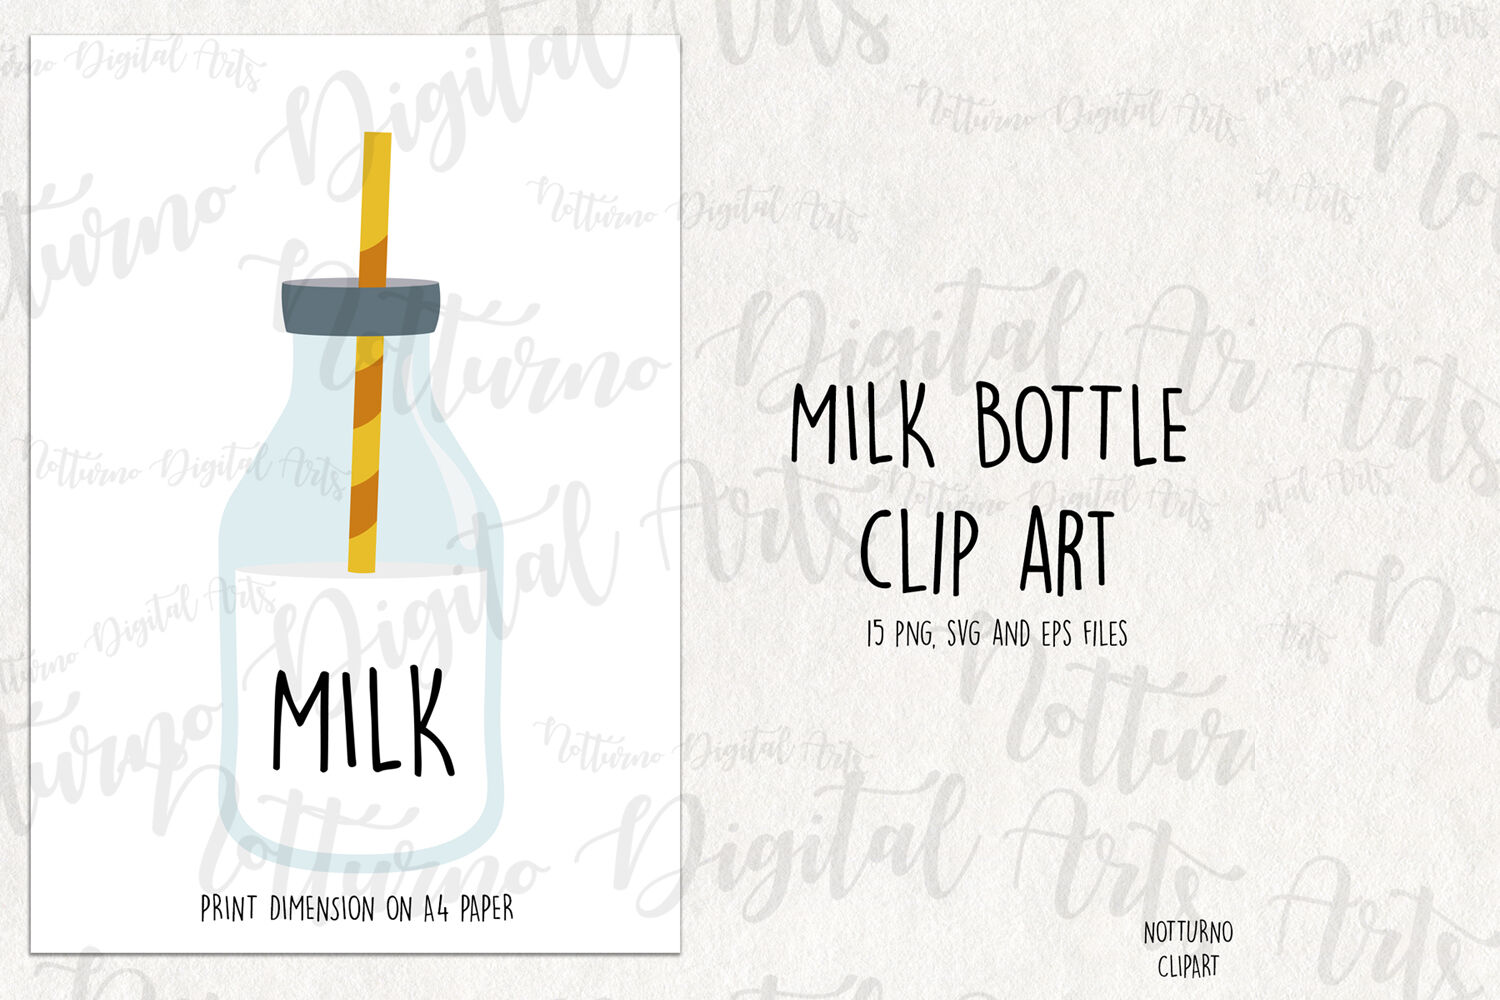 Download Clear Glass Milk Bottle Mockup Free Mockups Psd Template Design Assets PSD Mockup Templates